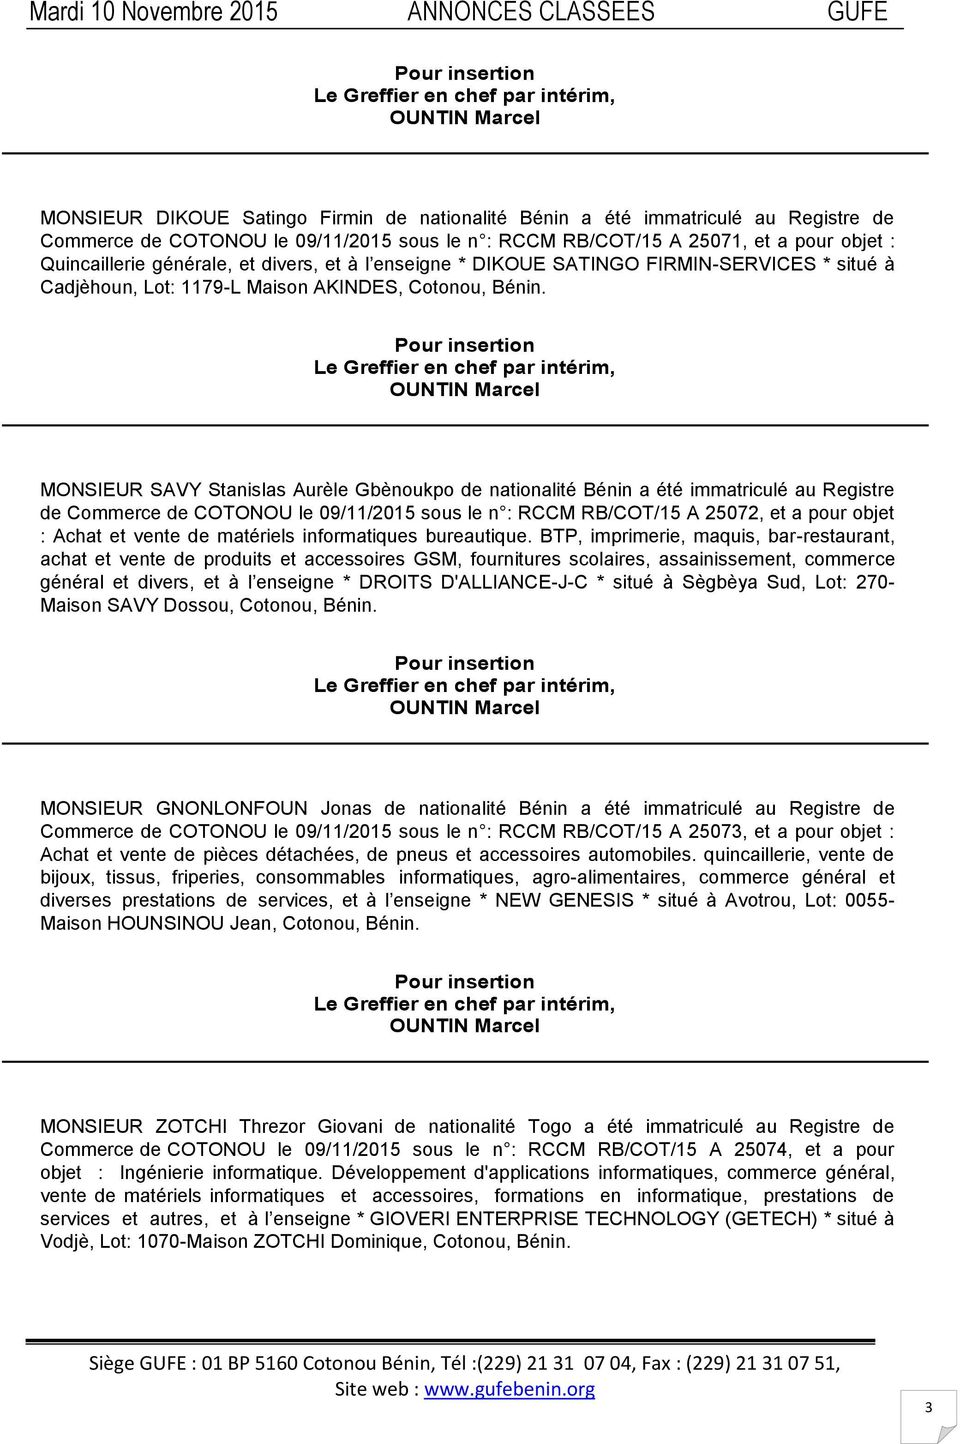 MONSIEUR SAVY Stanislas Aurèle Gbènoukpo de nationalité Bénin a été immatriculé au Registre de Commerce de COTONOU le 09/11/2015 sous le n : RCCM RB/COT/15 A 25072, et a pour objet : Achat et vente